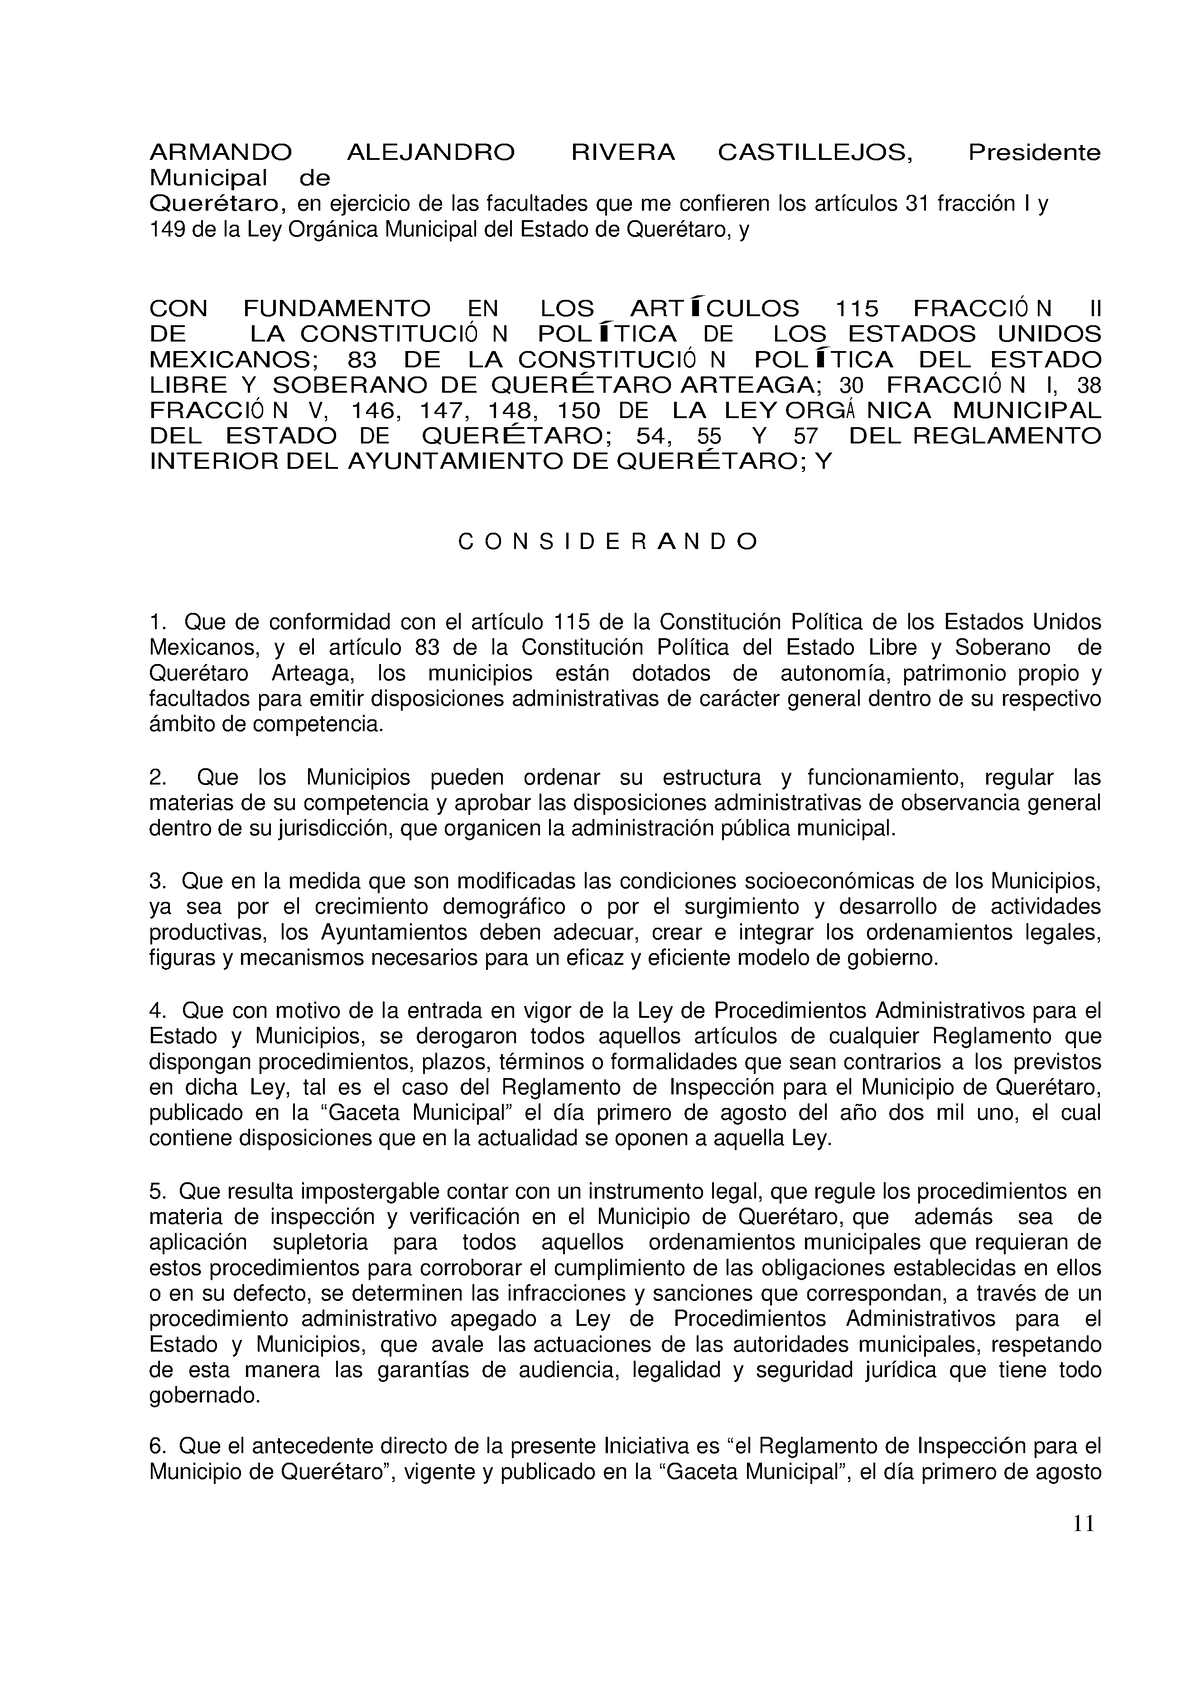 Reglamento DE Inspección Y Verificación PARA EL Municipio DE Querétaro ...